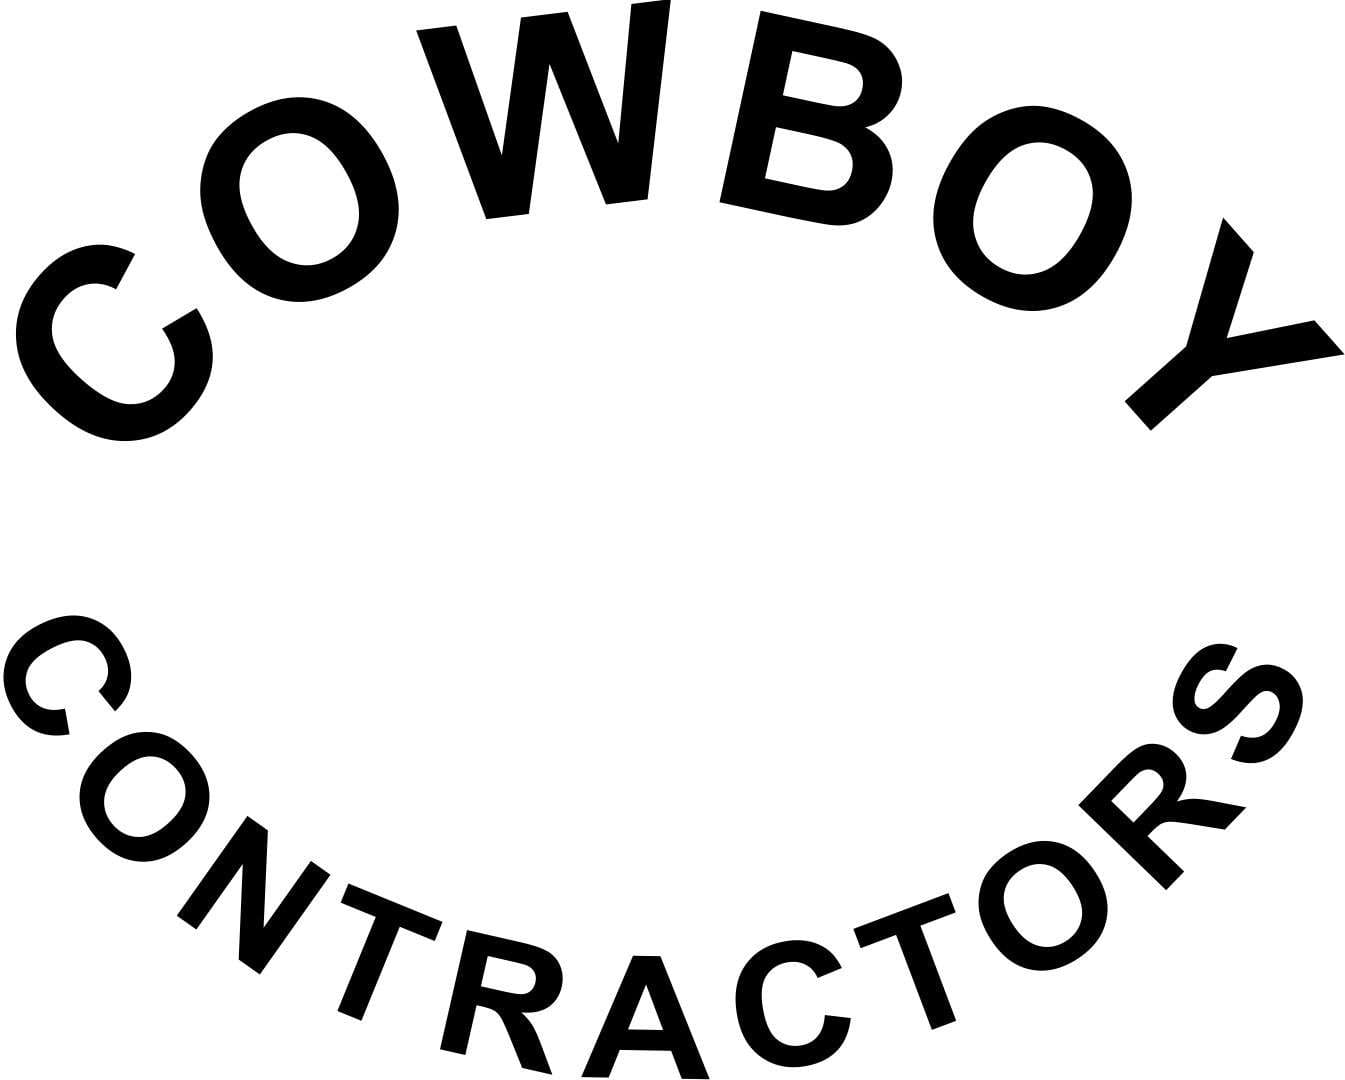 Cowboy Contractors | Better Business Bureau® Profile